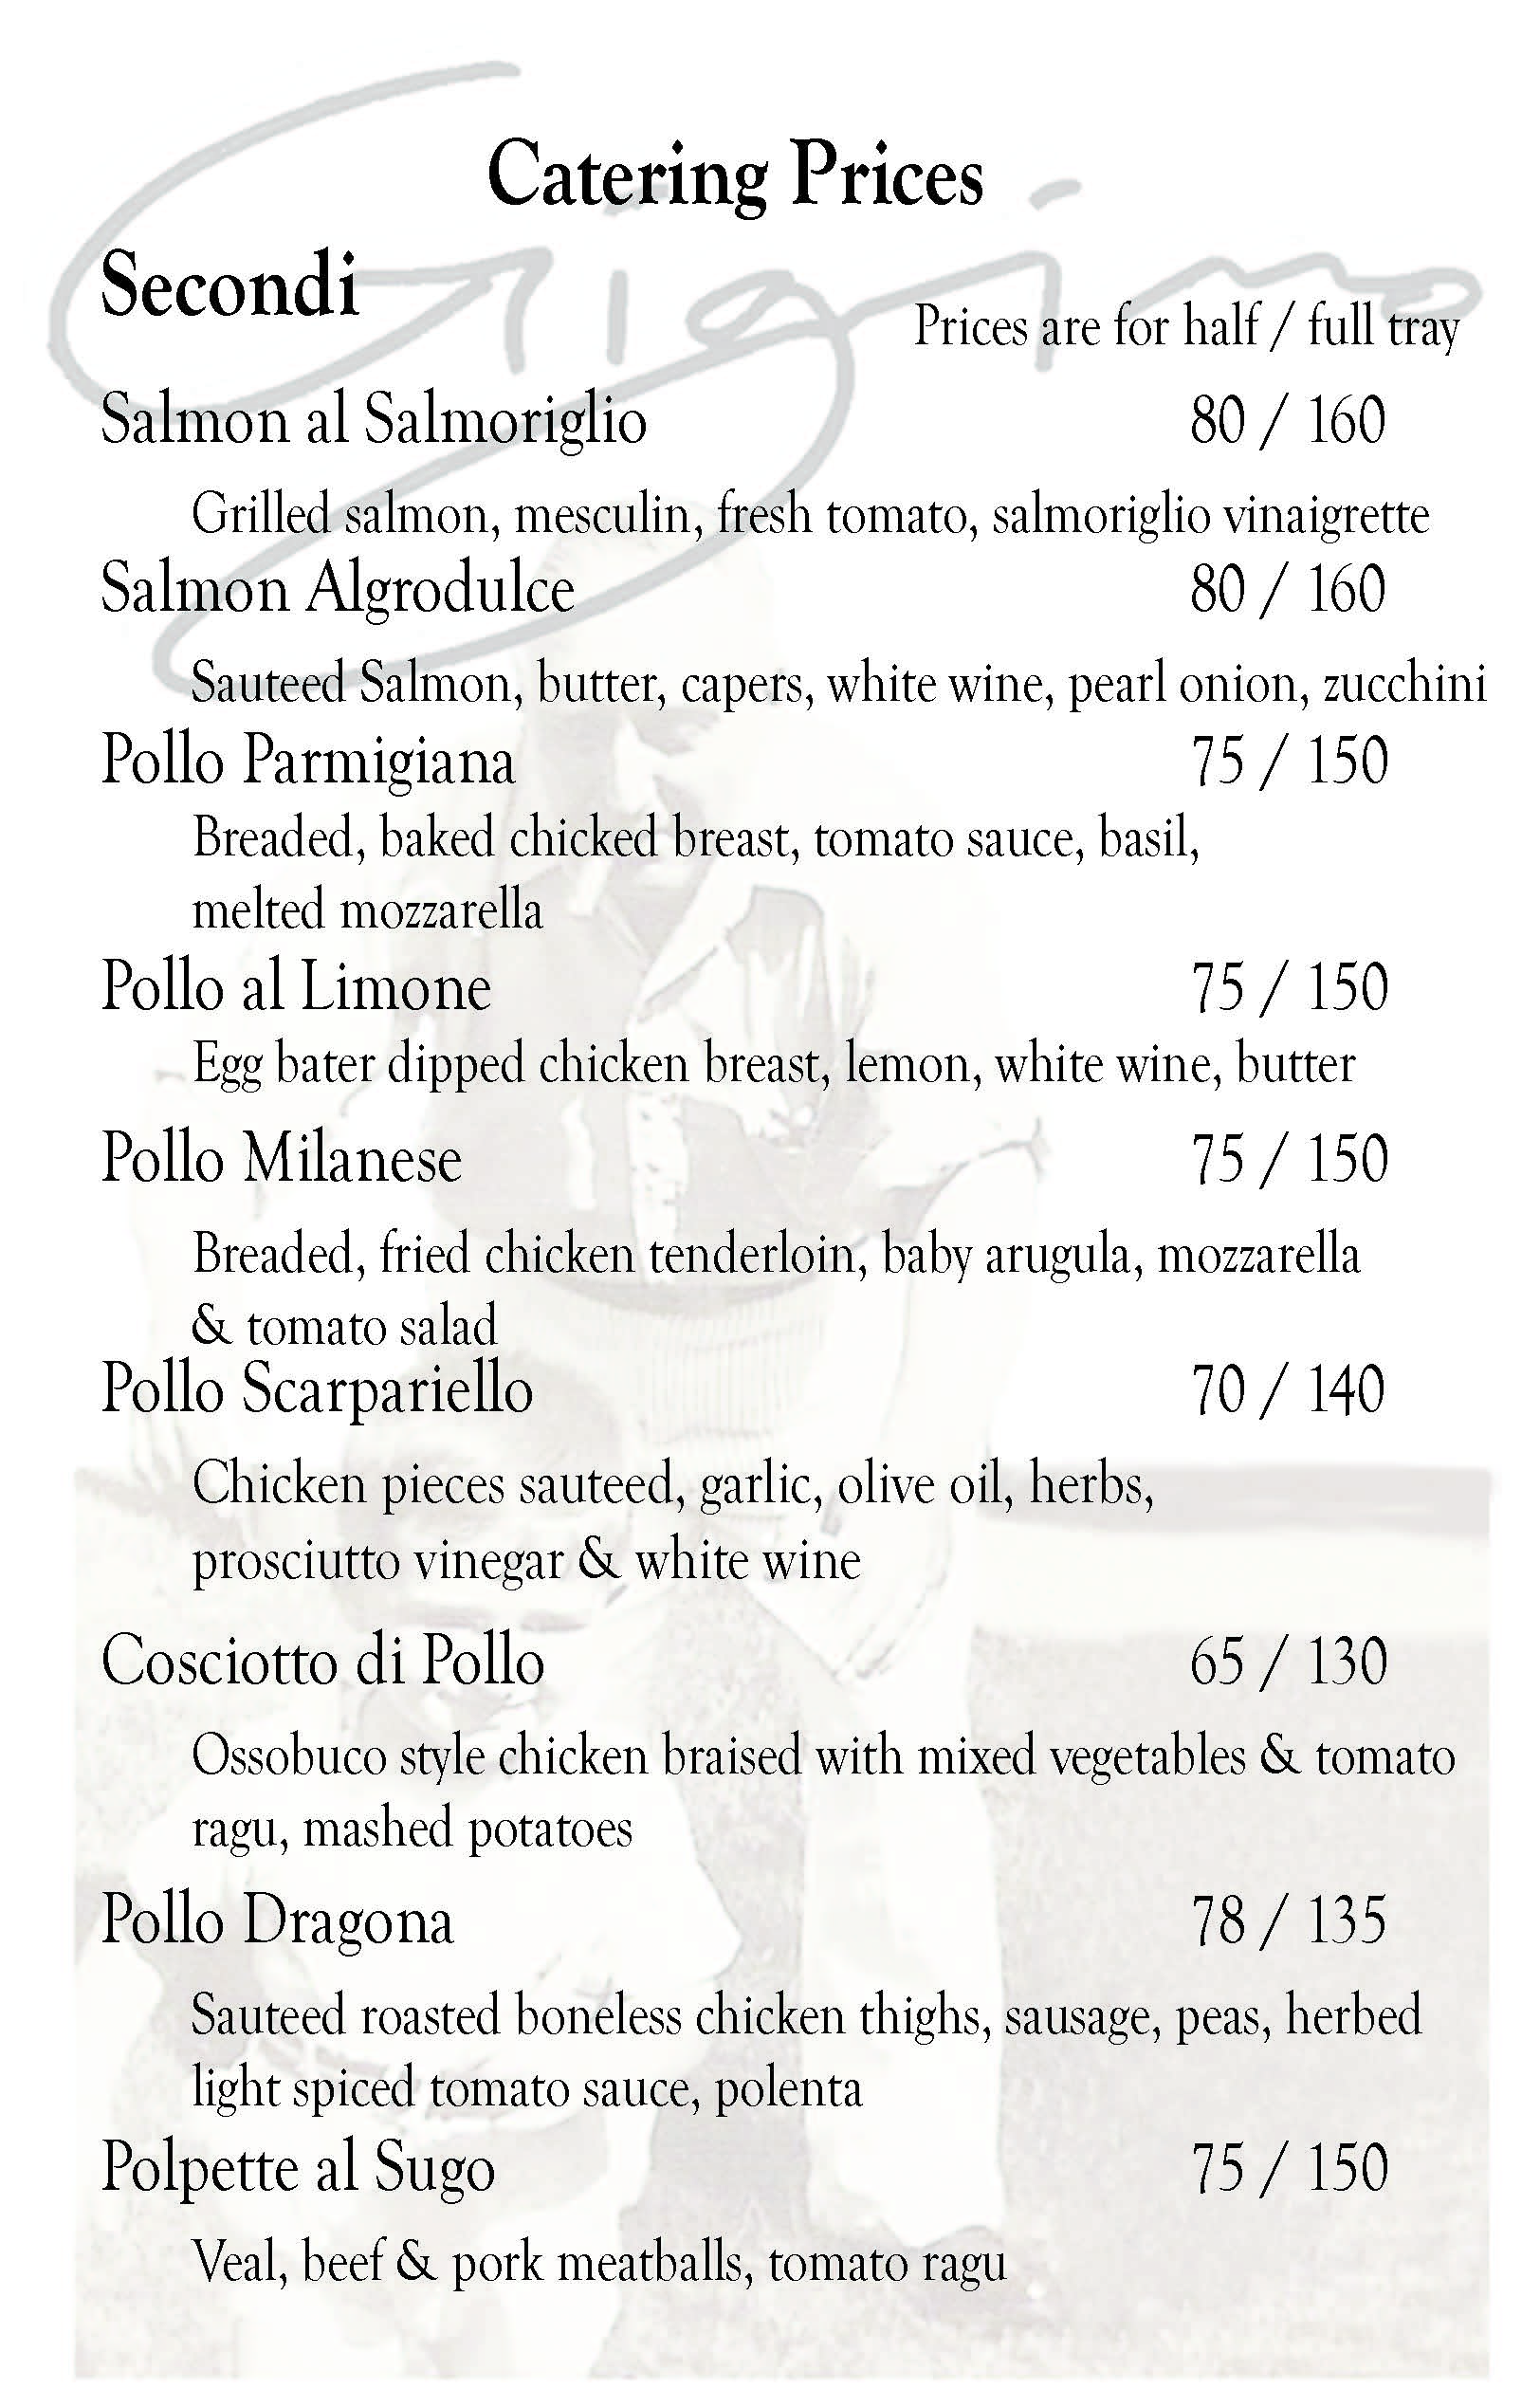 Gigino Trattoria Catering Menu 2015_Page_4